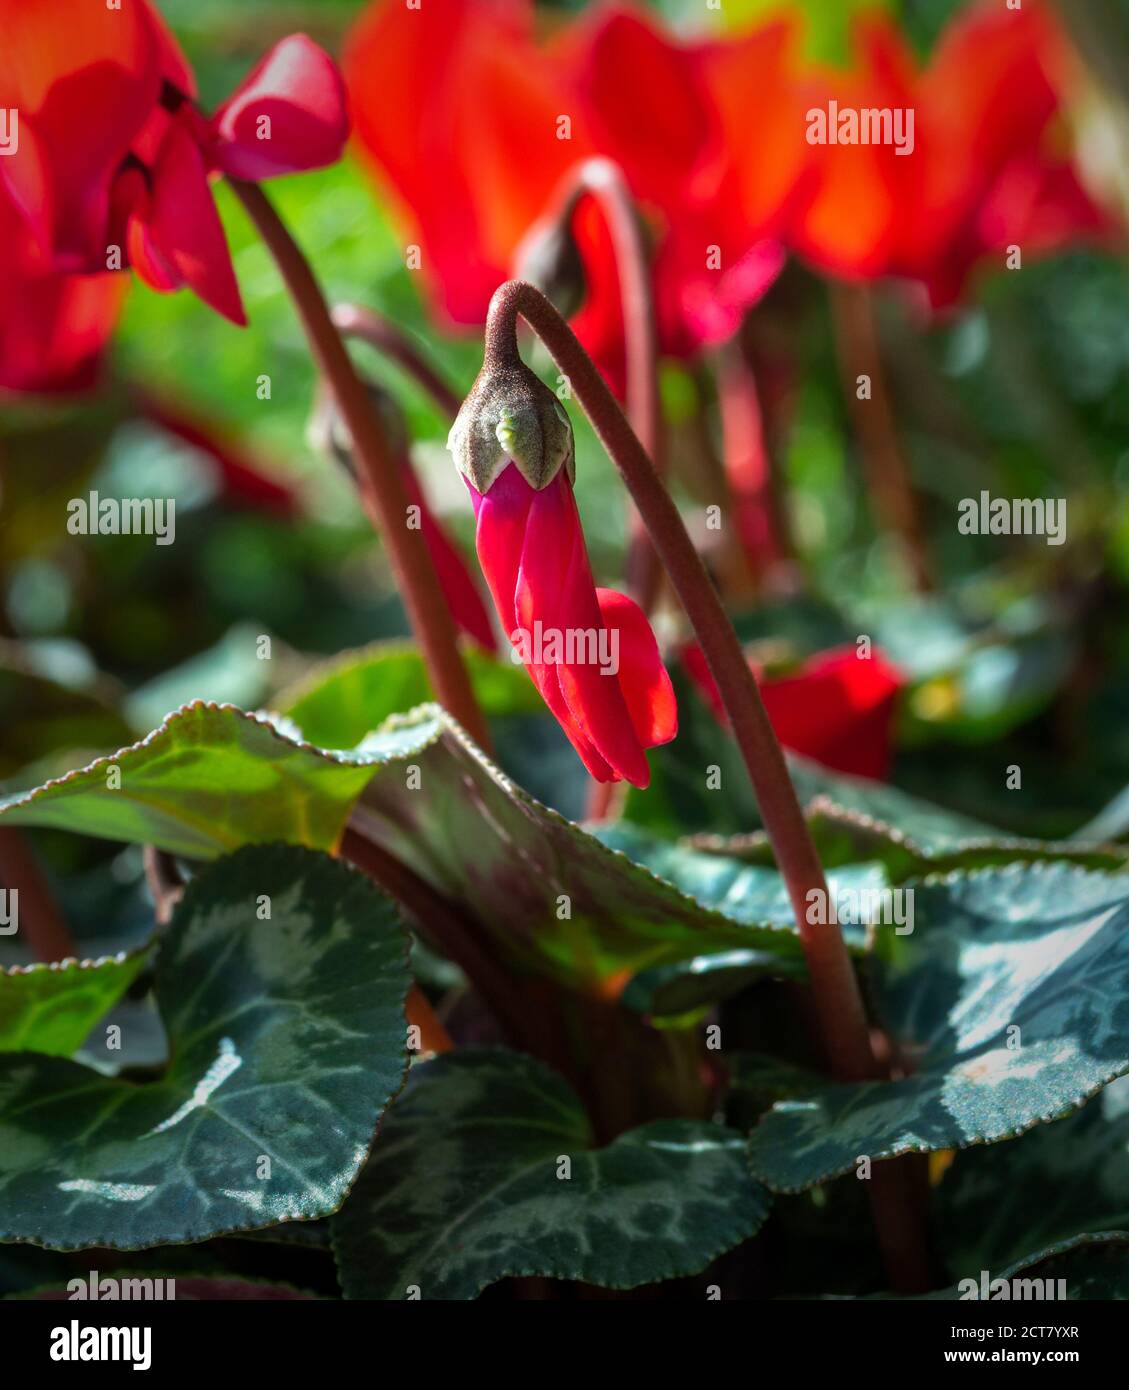 Red Cyclamen growing in a UK garden Stock Photo